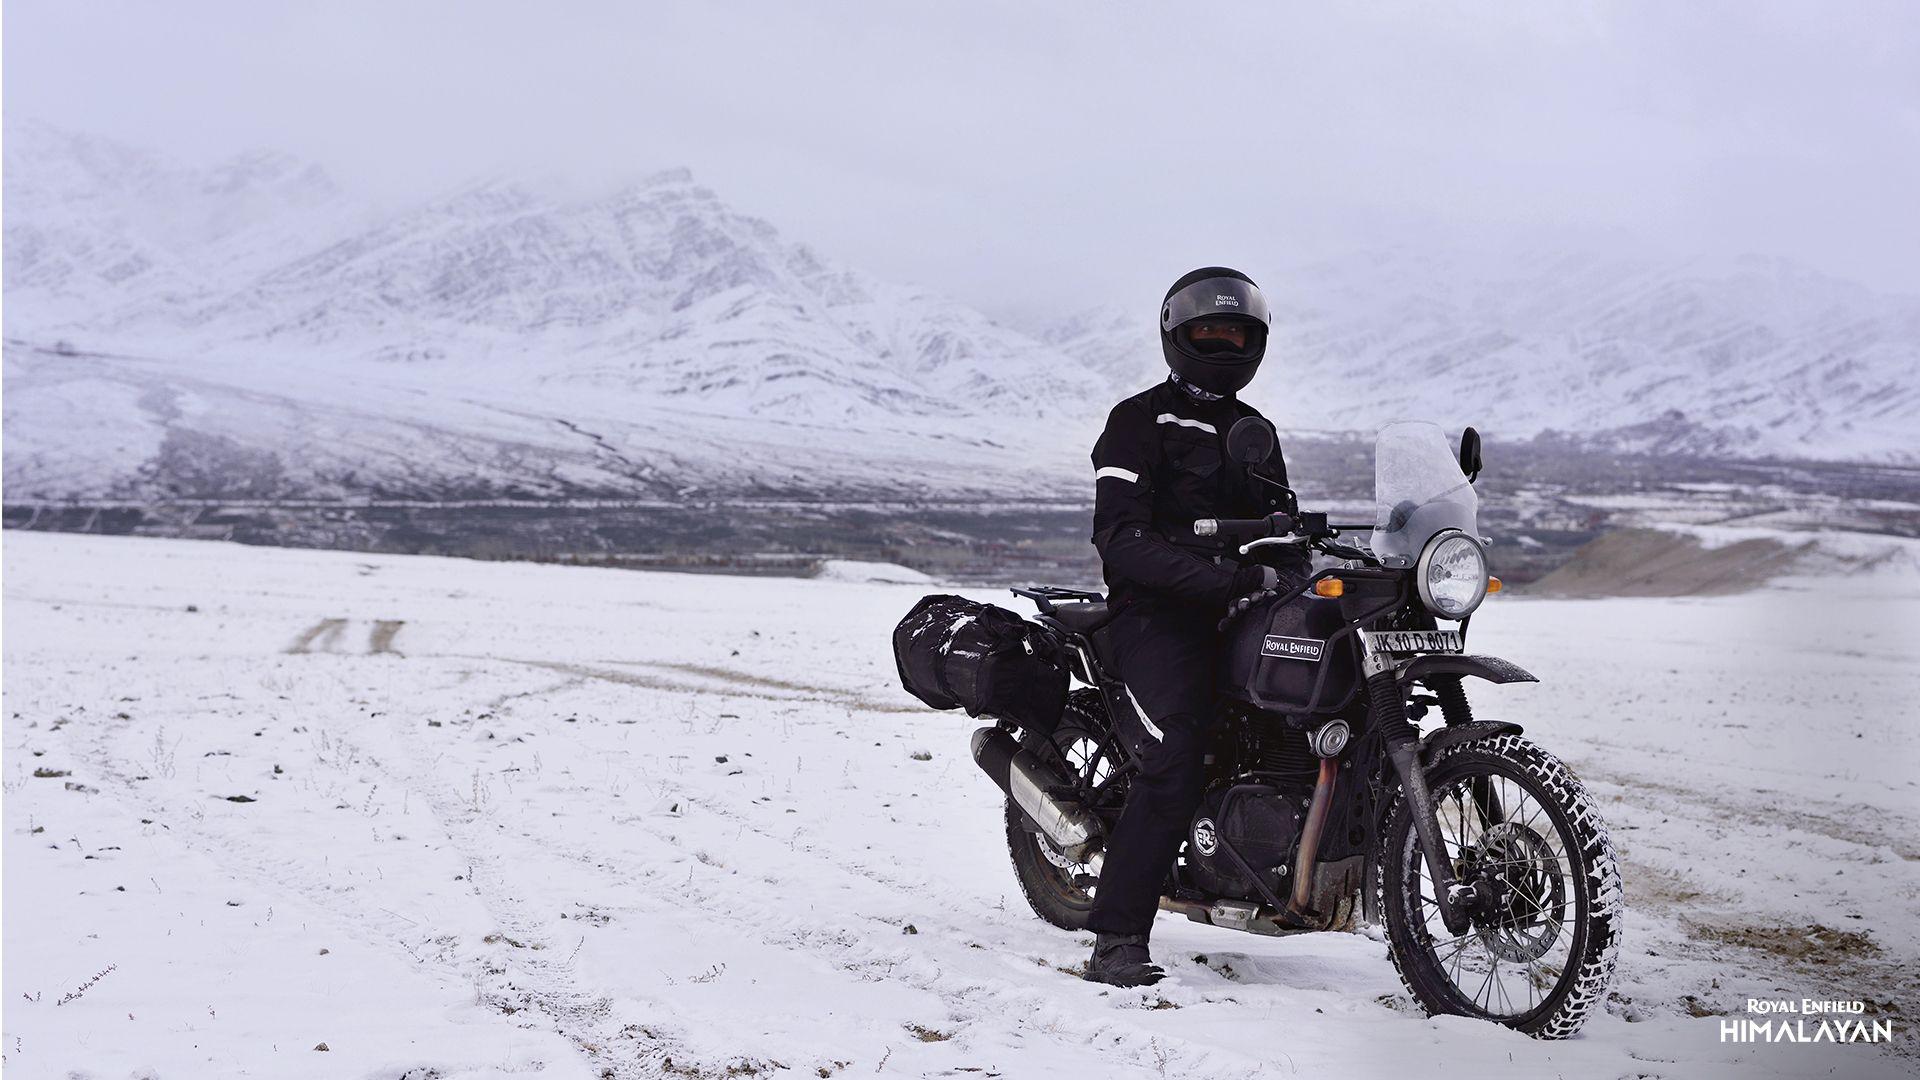 Royal Enfield Himalayan in store at Noosa Motorcycles